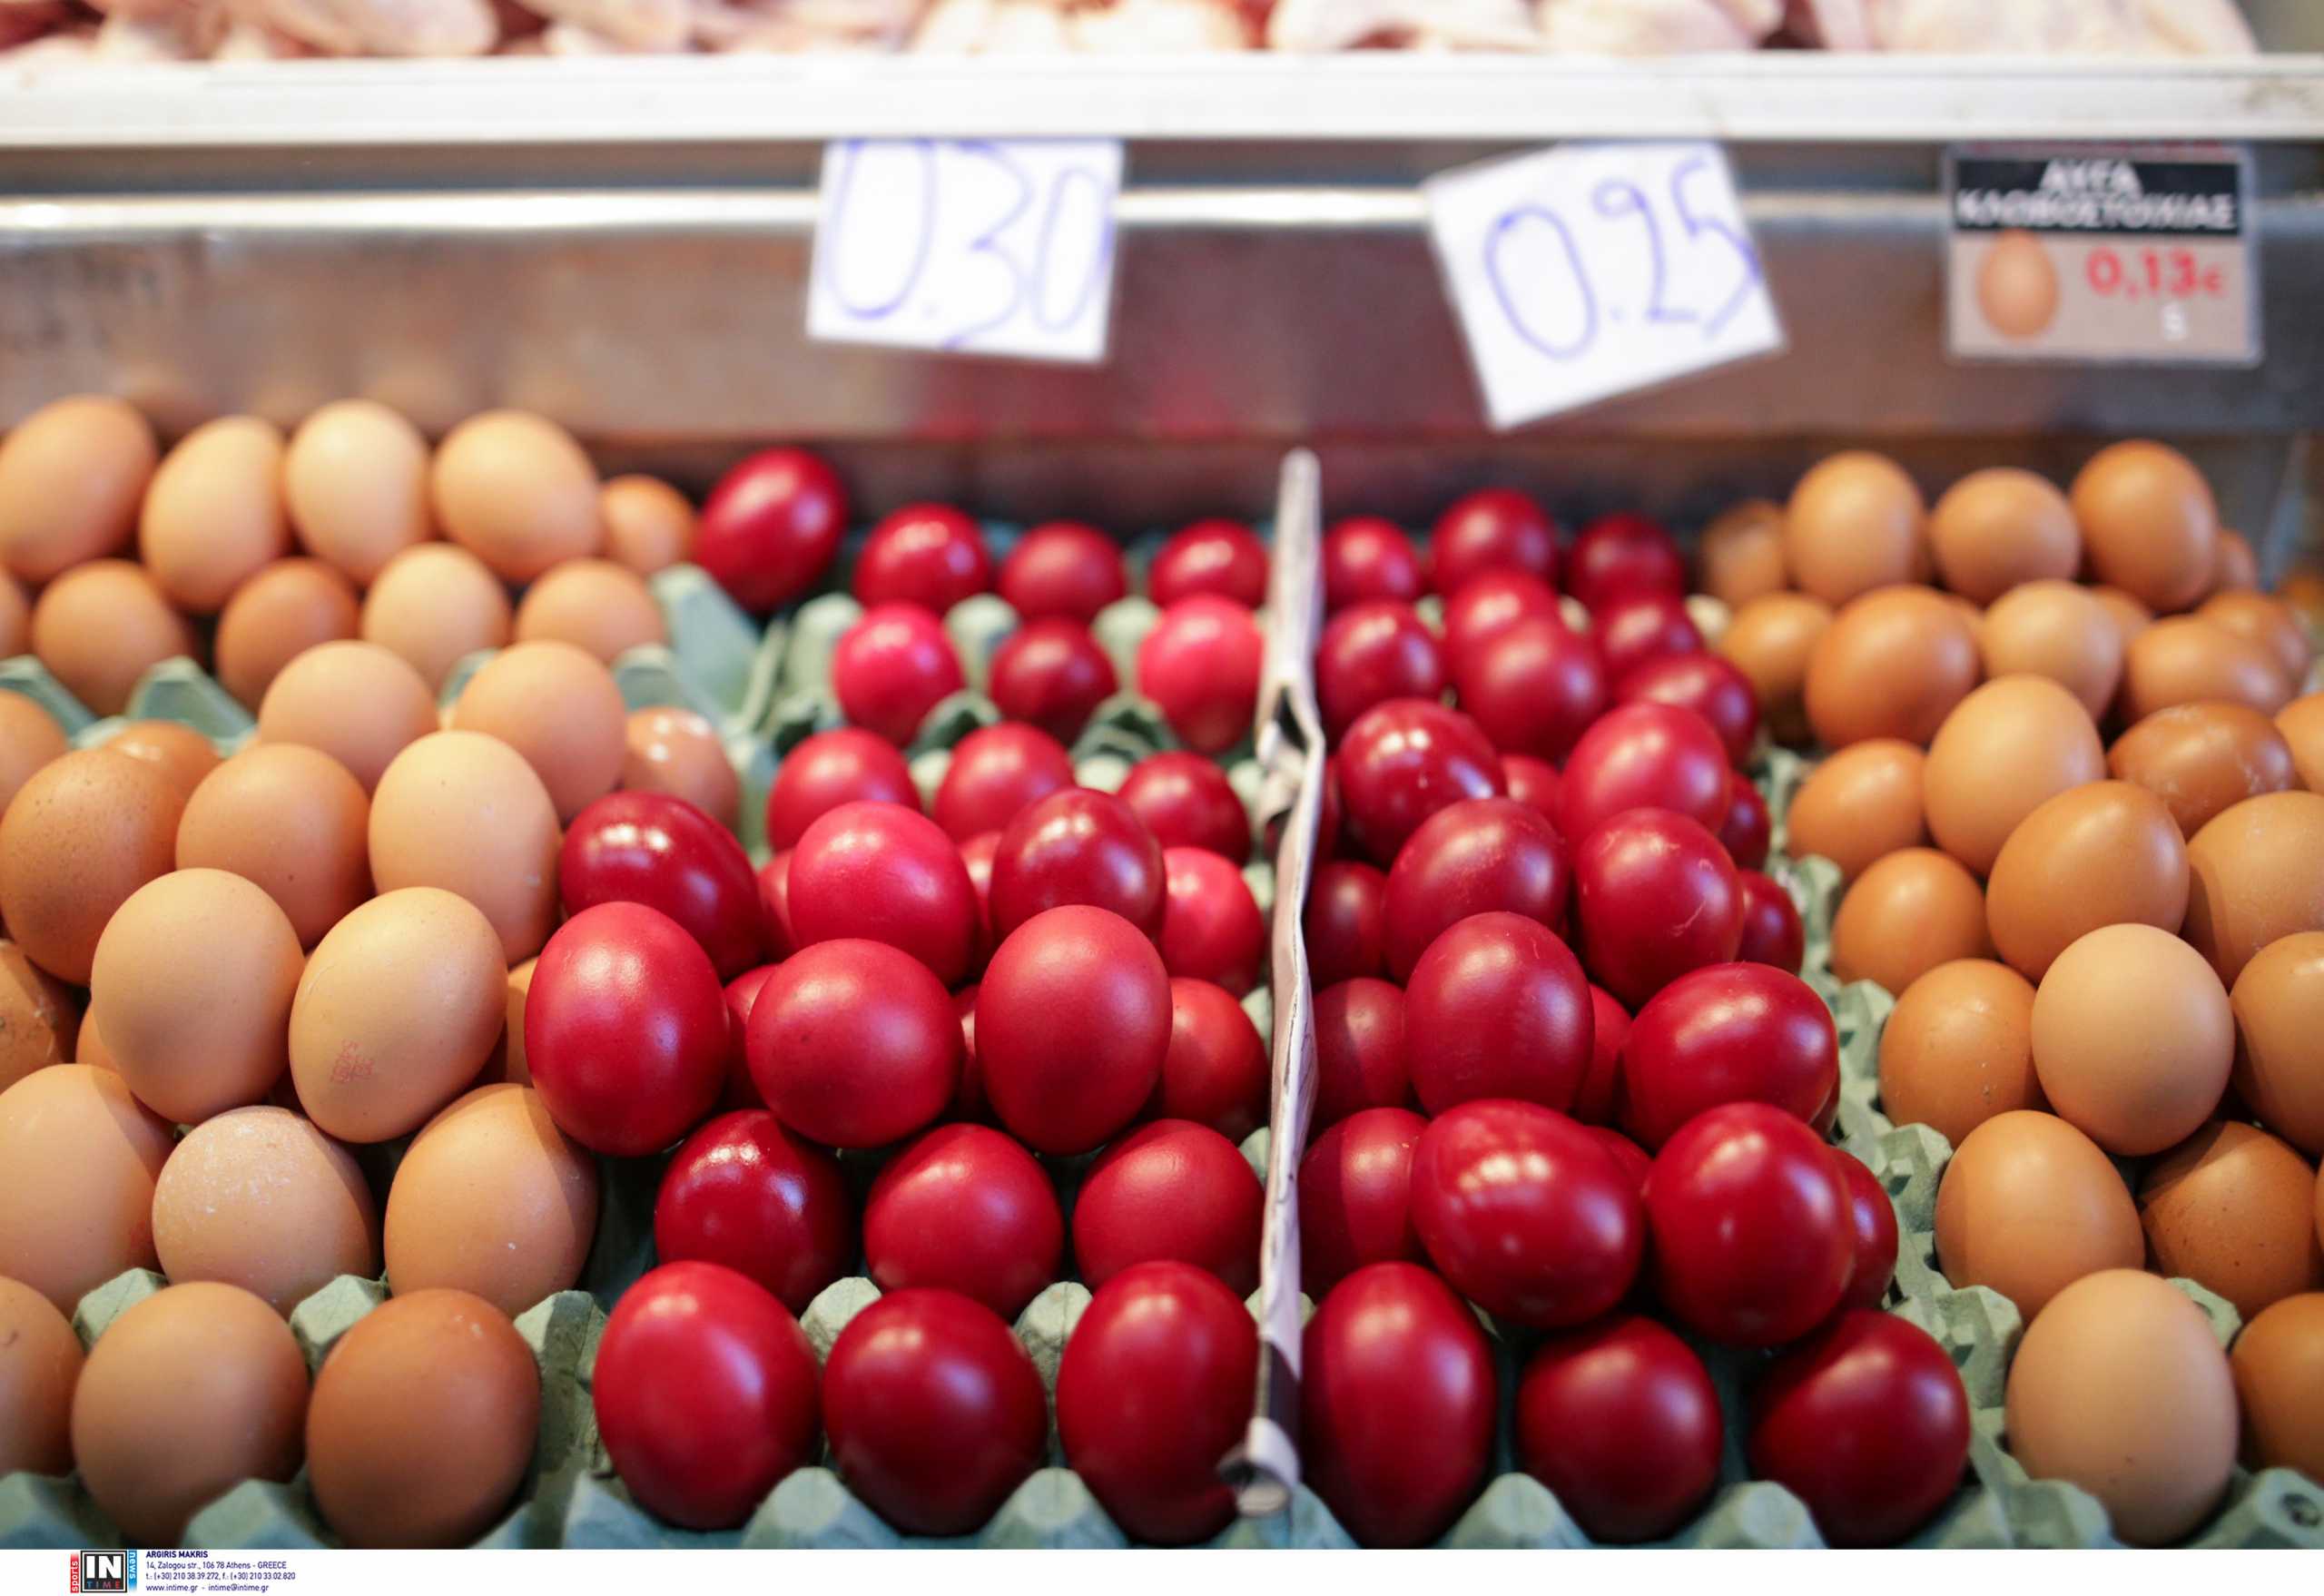 ΕΦΕΤ: Τι πρέπει να προσέχουμε όταν αγοράζουμε κρέας, αυγά και πασχαλινά αυγά